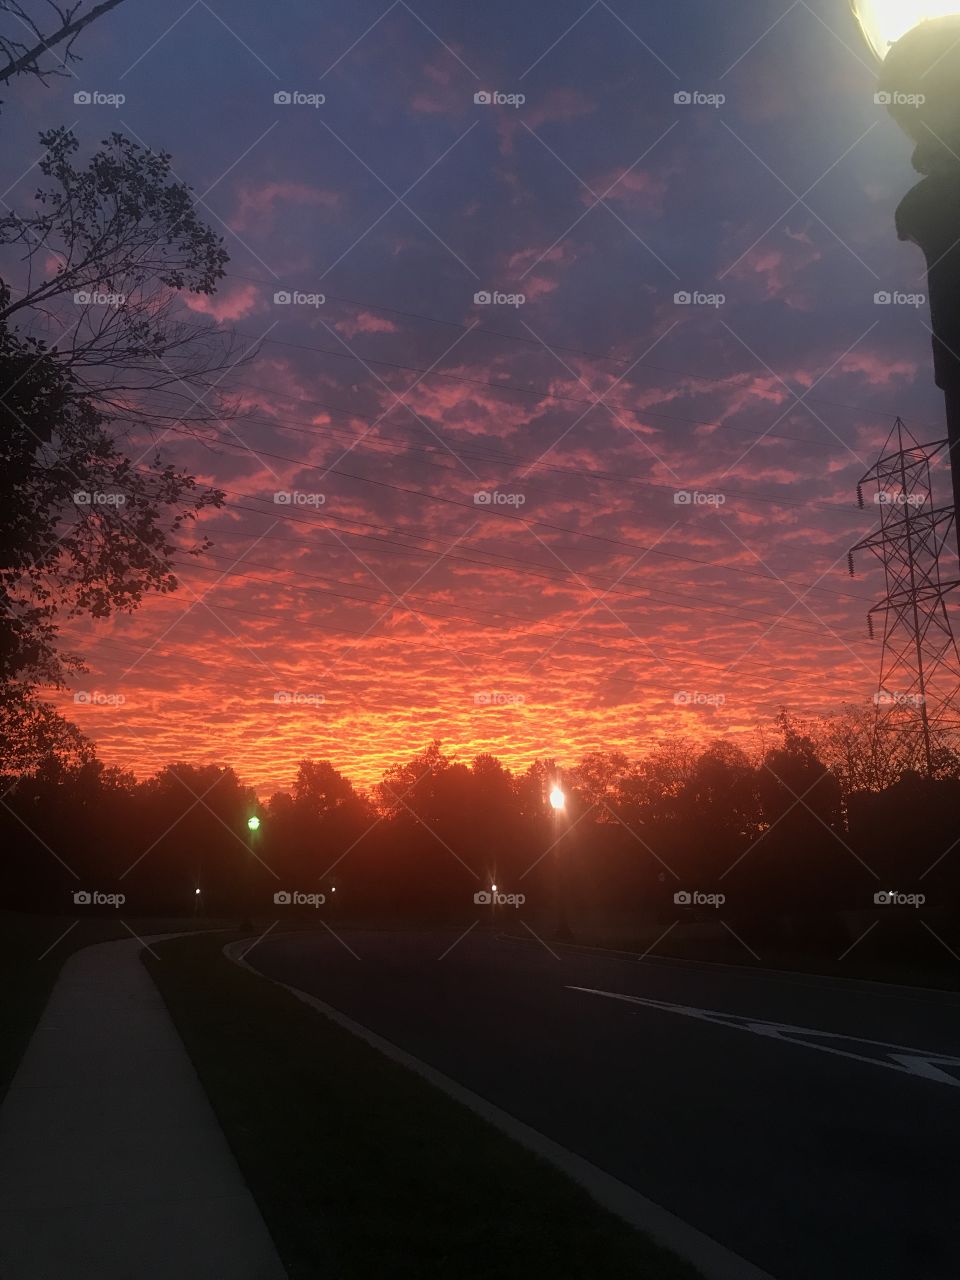 A beautiful sunset